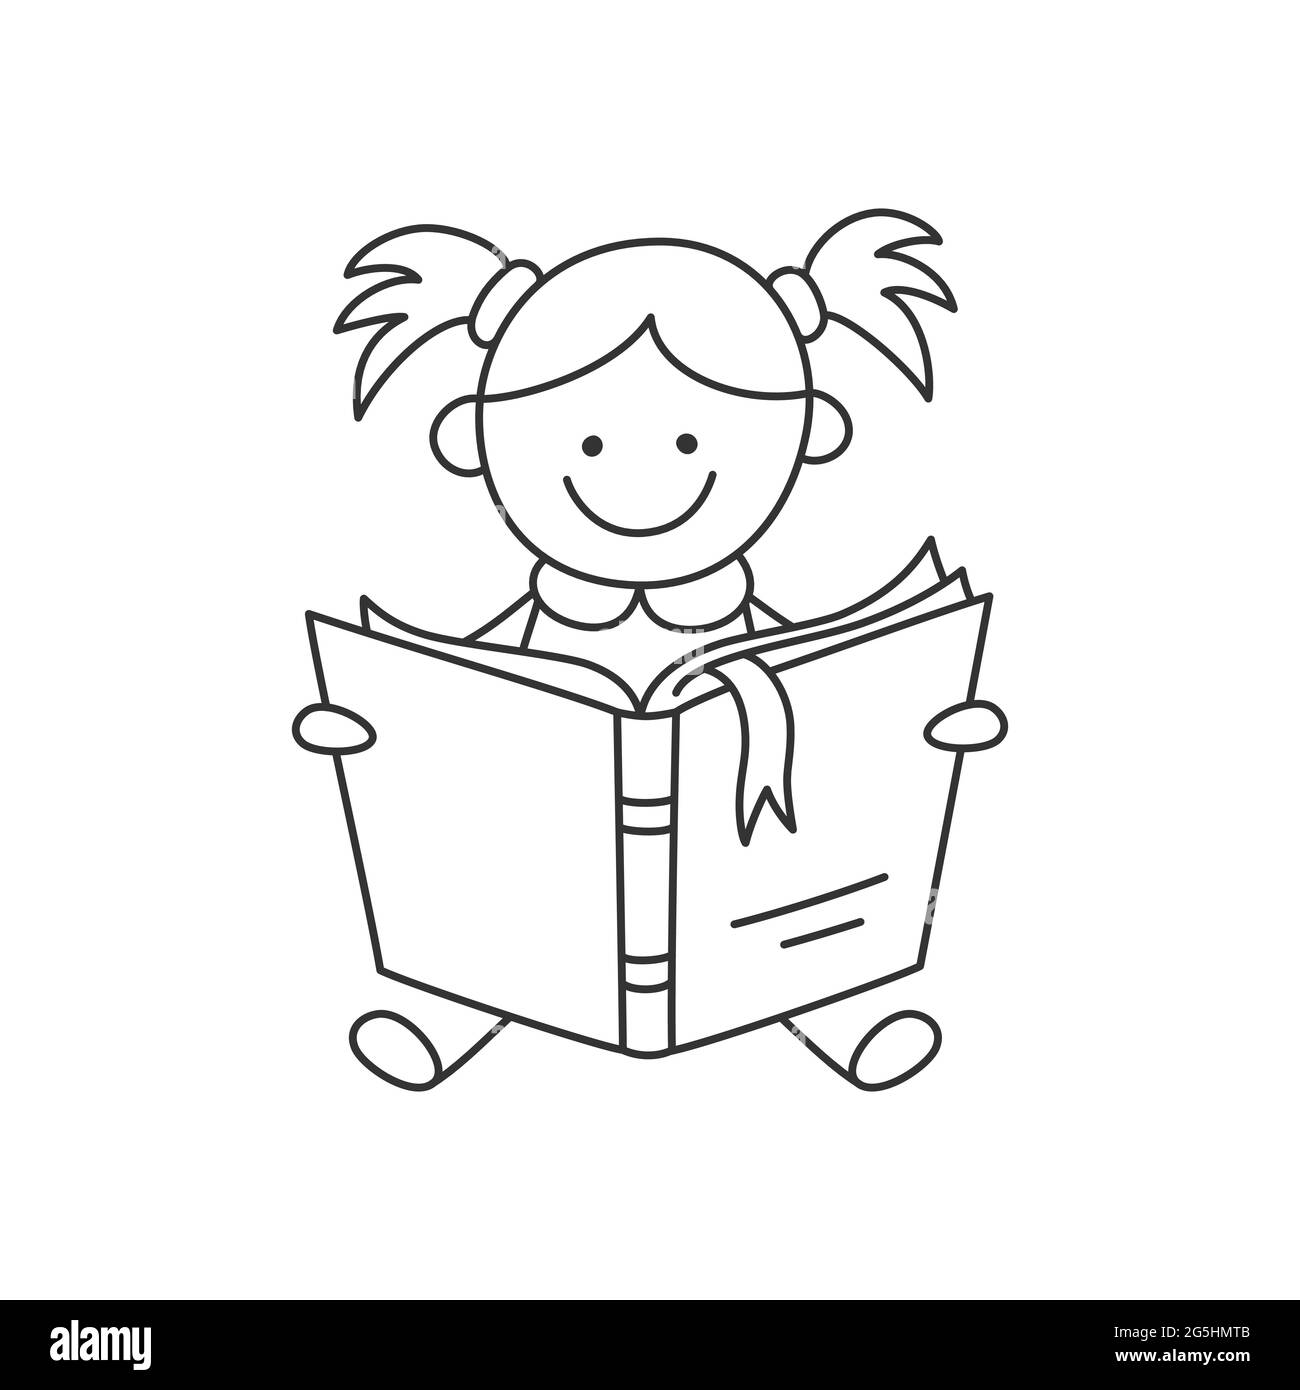 https://c8.alamy.com/compes/2g5hmtb/nino-pequeno-dibujado-a-mano-sosteniendo-libro-abierto-y-leyendo-educacion-infantil-la-chica-lee-el-libro-ilustracion-vectorial-aislada-sobre-fondo-blanco-en-estilo-fideos-2g5hmtb.jpg